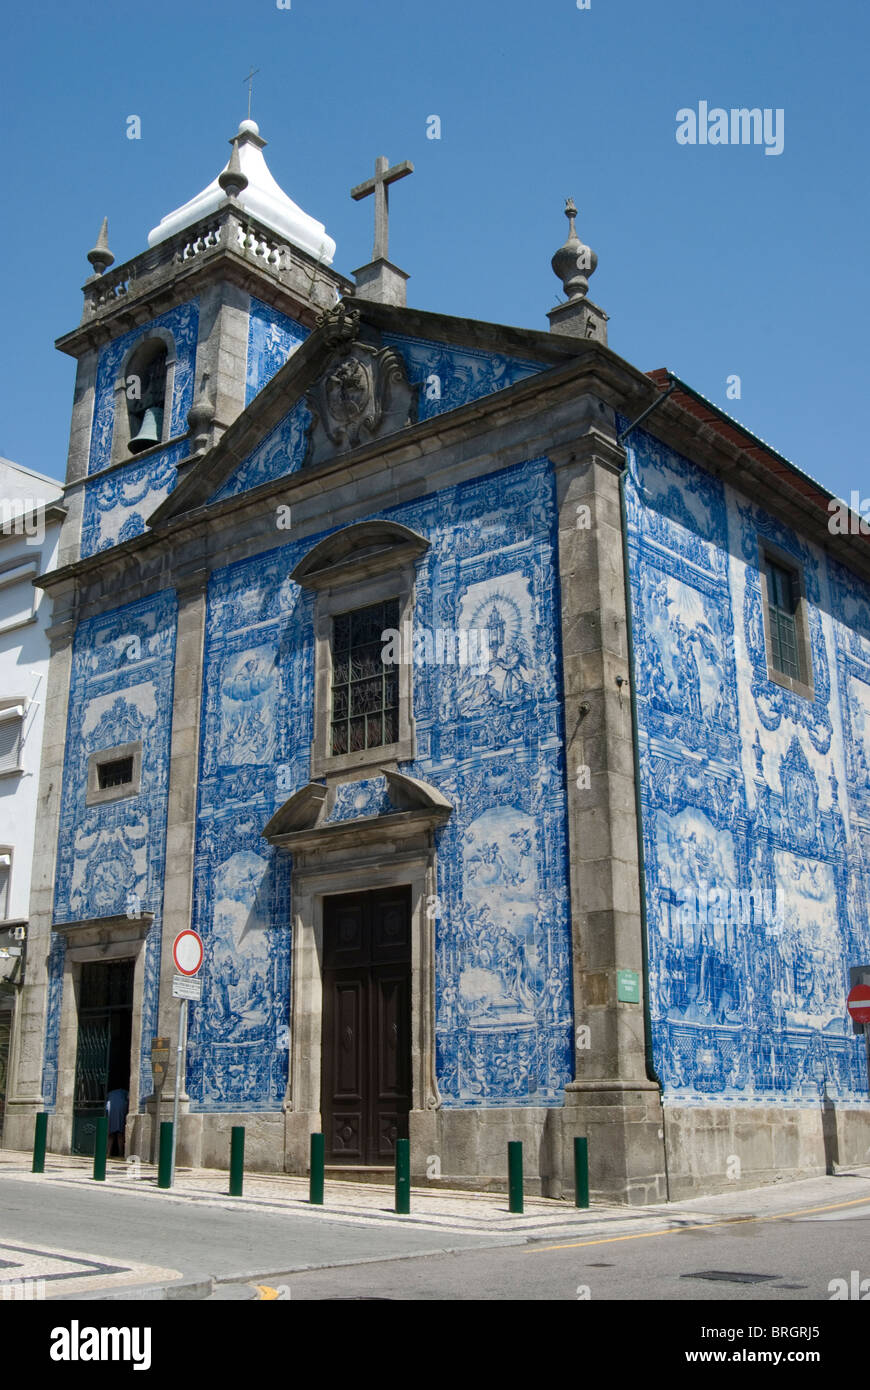 Capela das Almas Church facade in Porto, Portugal. Stock Photo